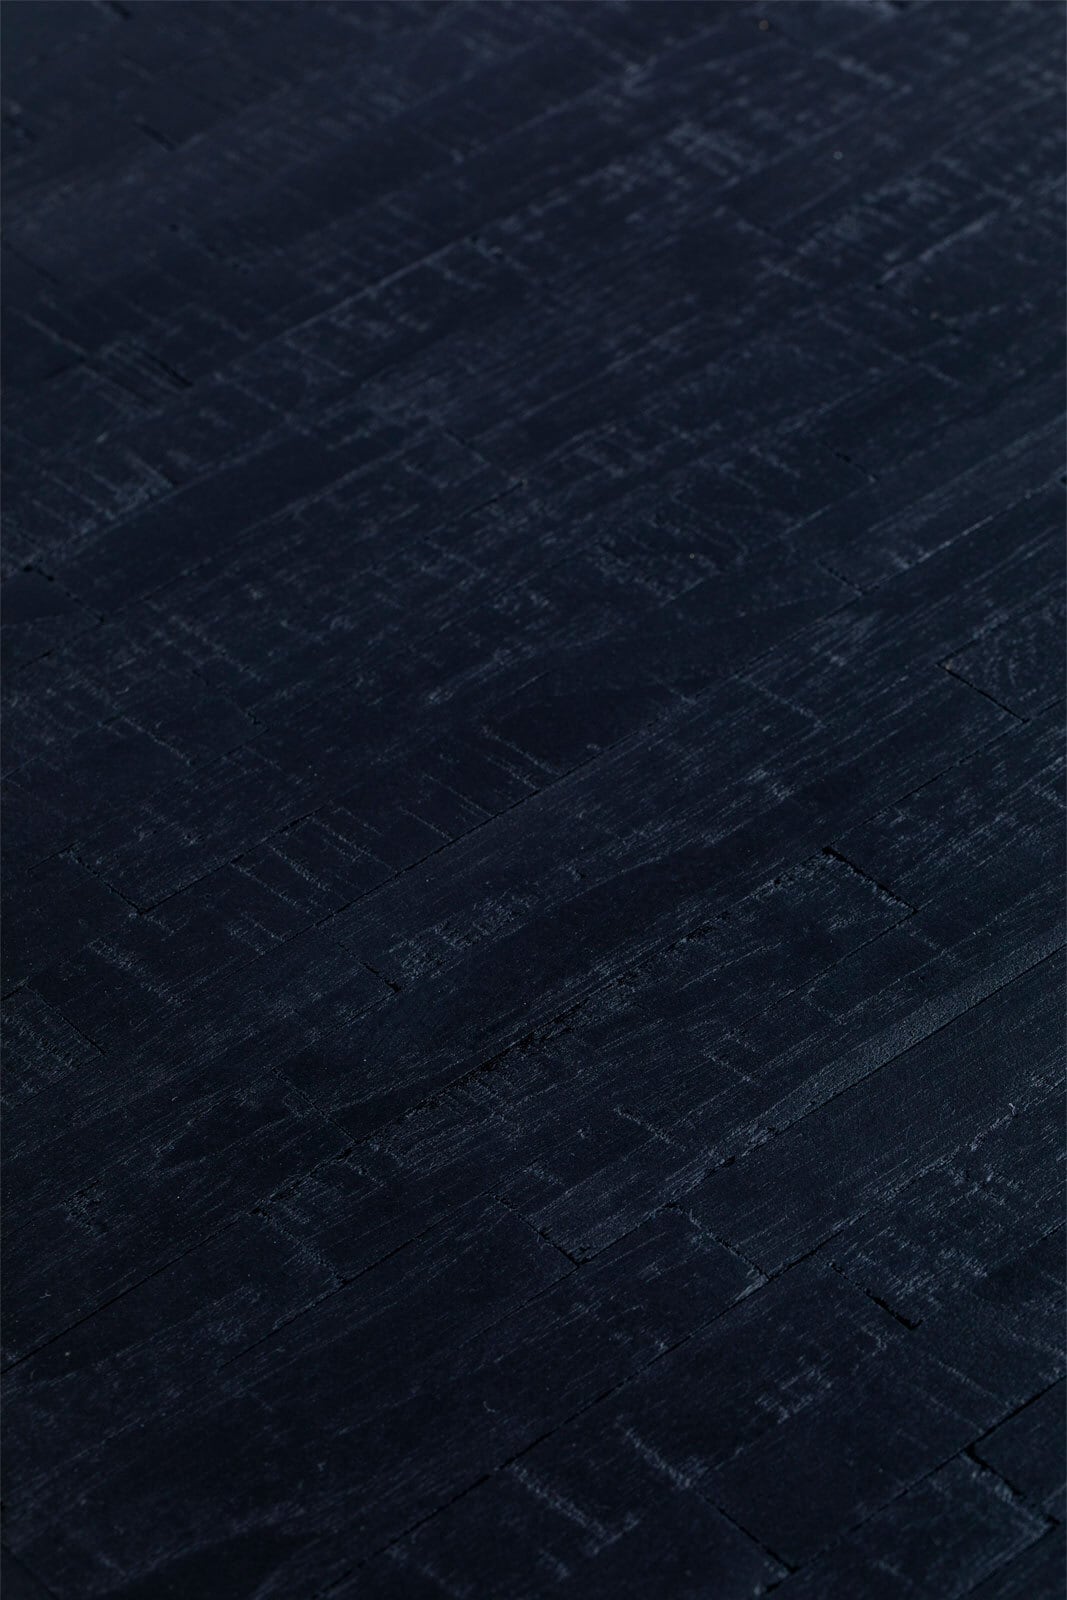 Esstisch SURI 90 x 180 cm Teakholz massiv schwarz